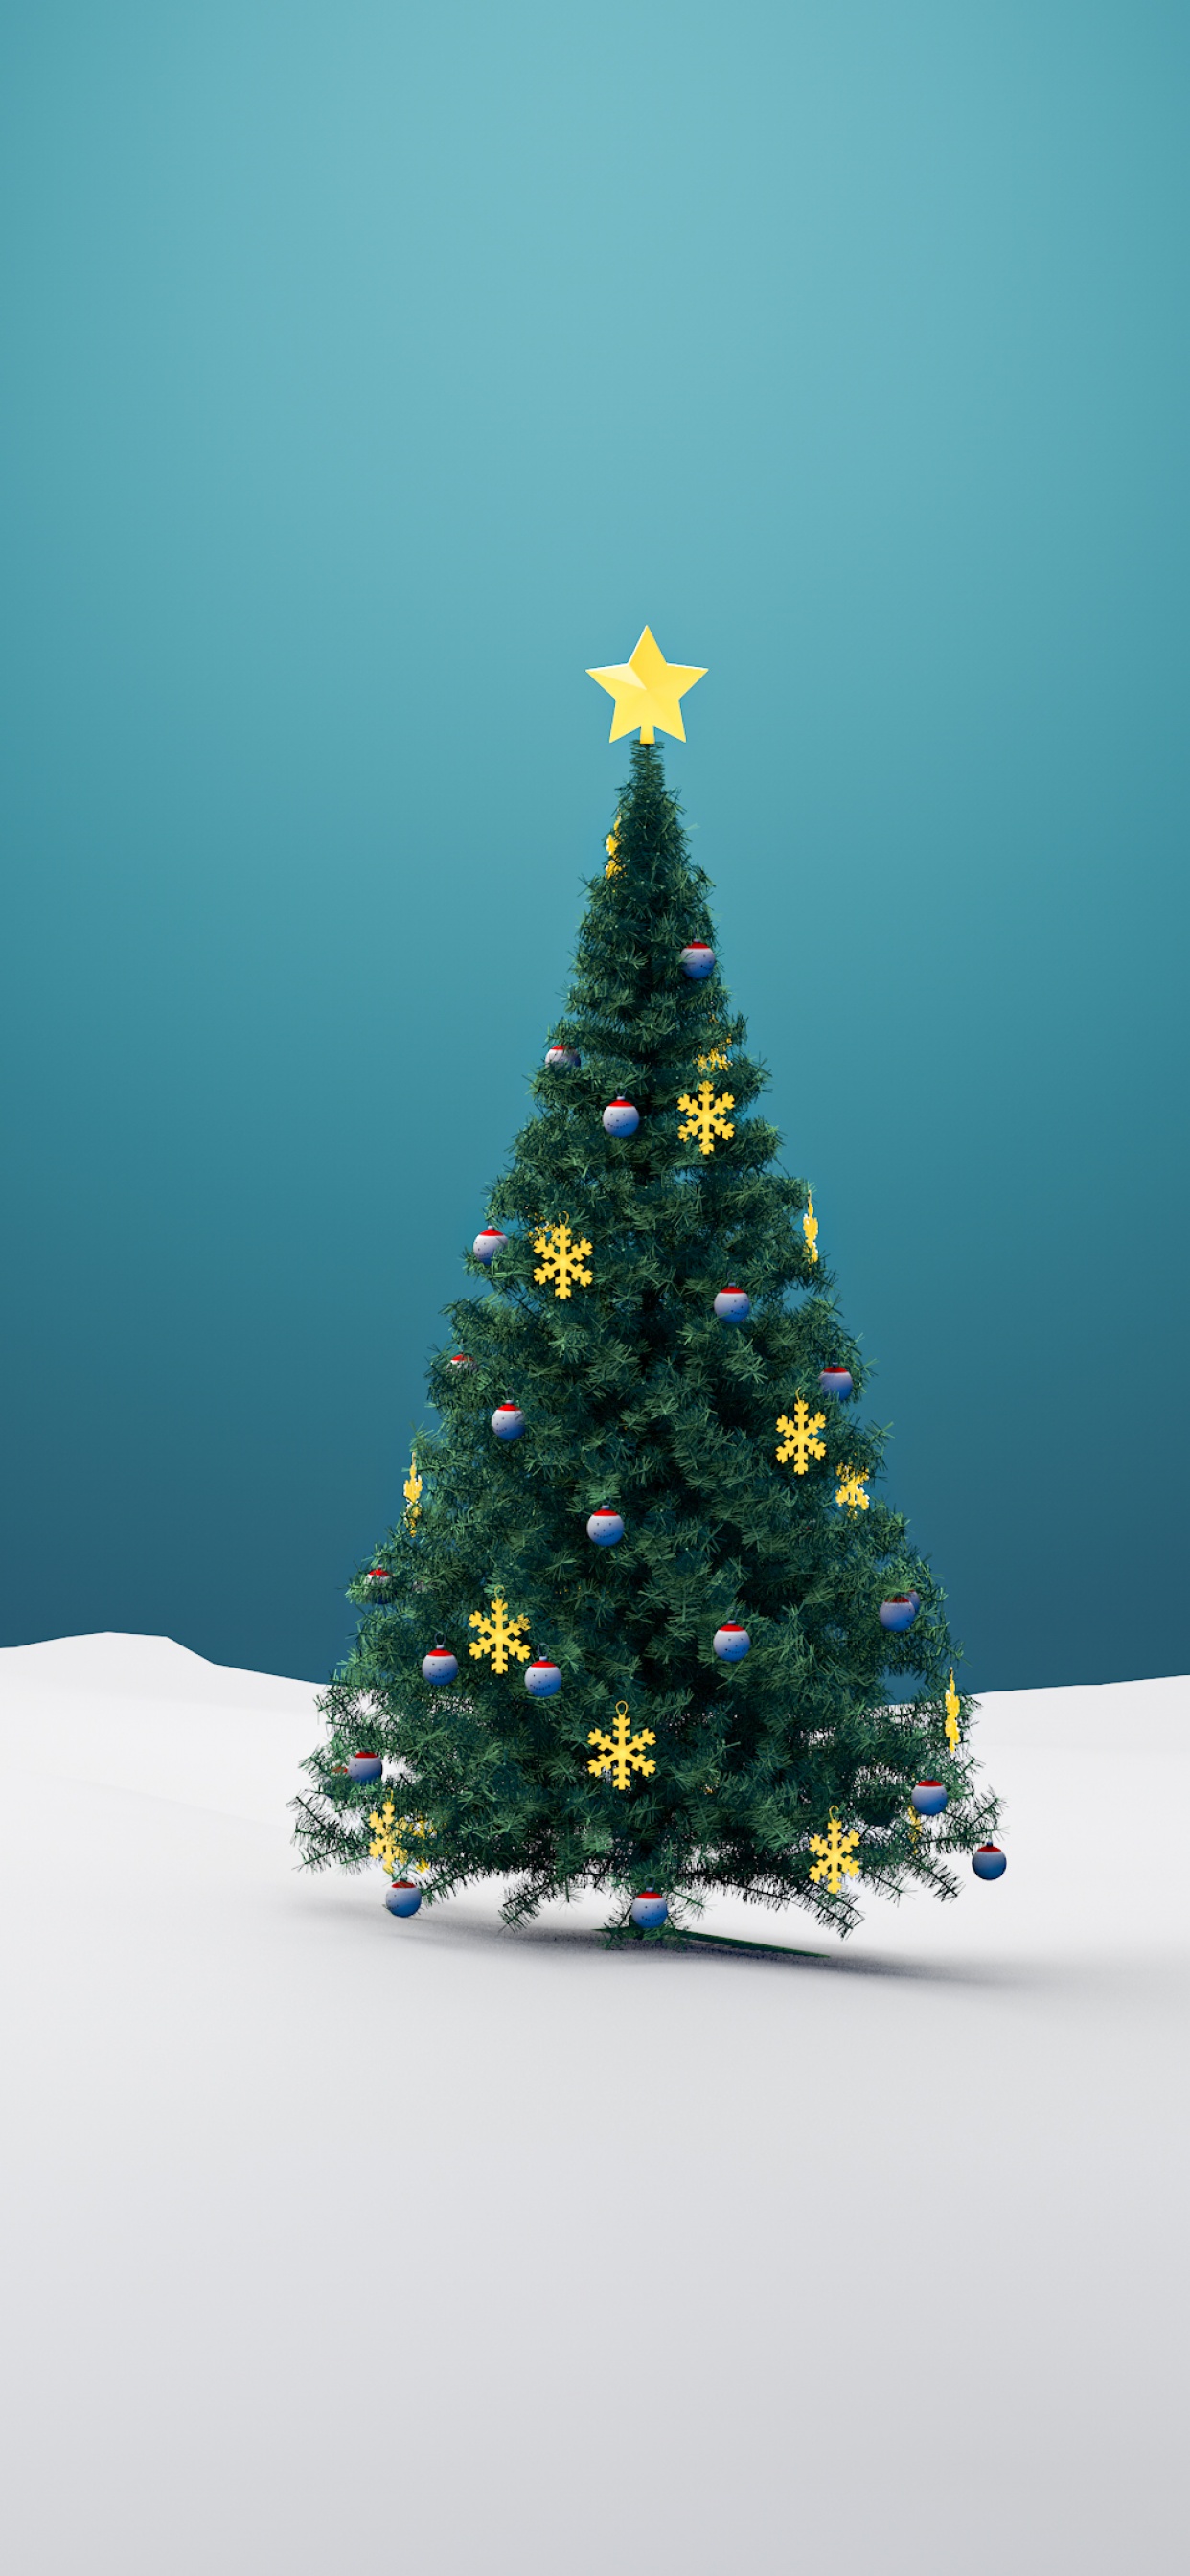 Cây thông Noel: Cây thông Noel là biểu tượng không thể thiếu trong mùa Giáng Sinh, mang lại niềm vui và hi vọng cho bất kỳ ai nhìn thấy nó. Hãy cùng nhau đắm mình trong không khí rộn ràng của mùa lễ hội bằng hình ảnh cây thông Noel tuyệt đẹp.